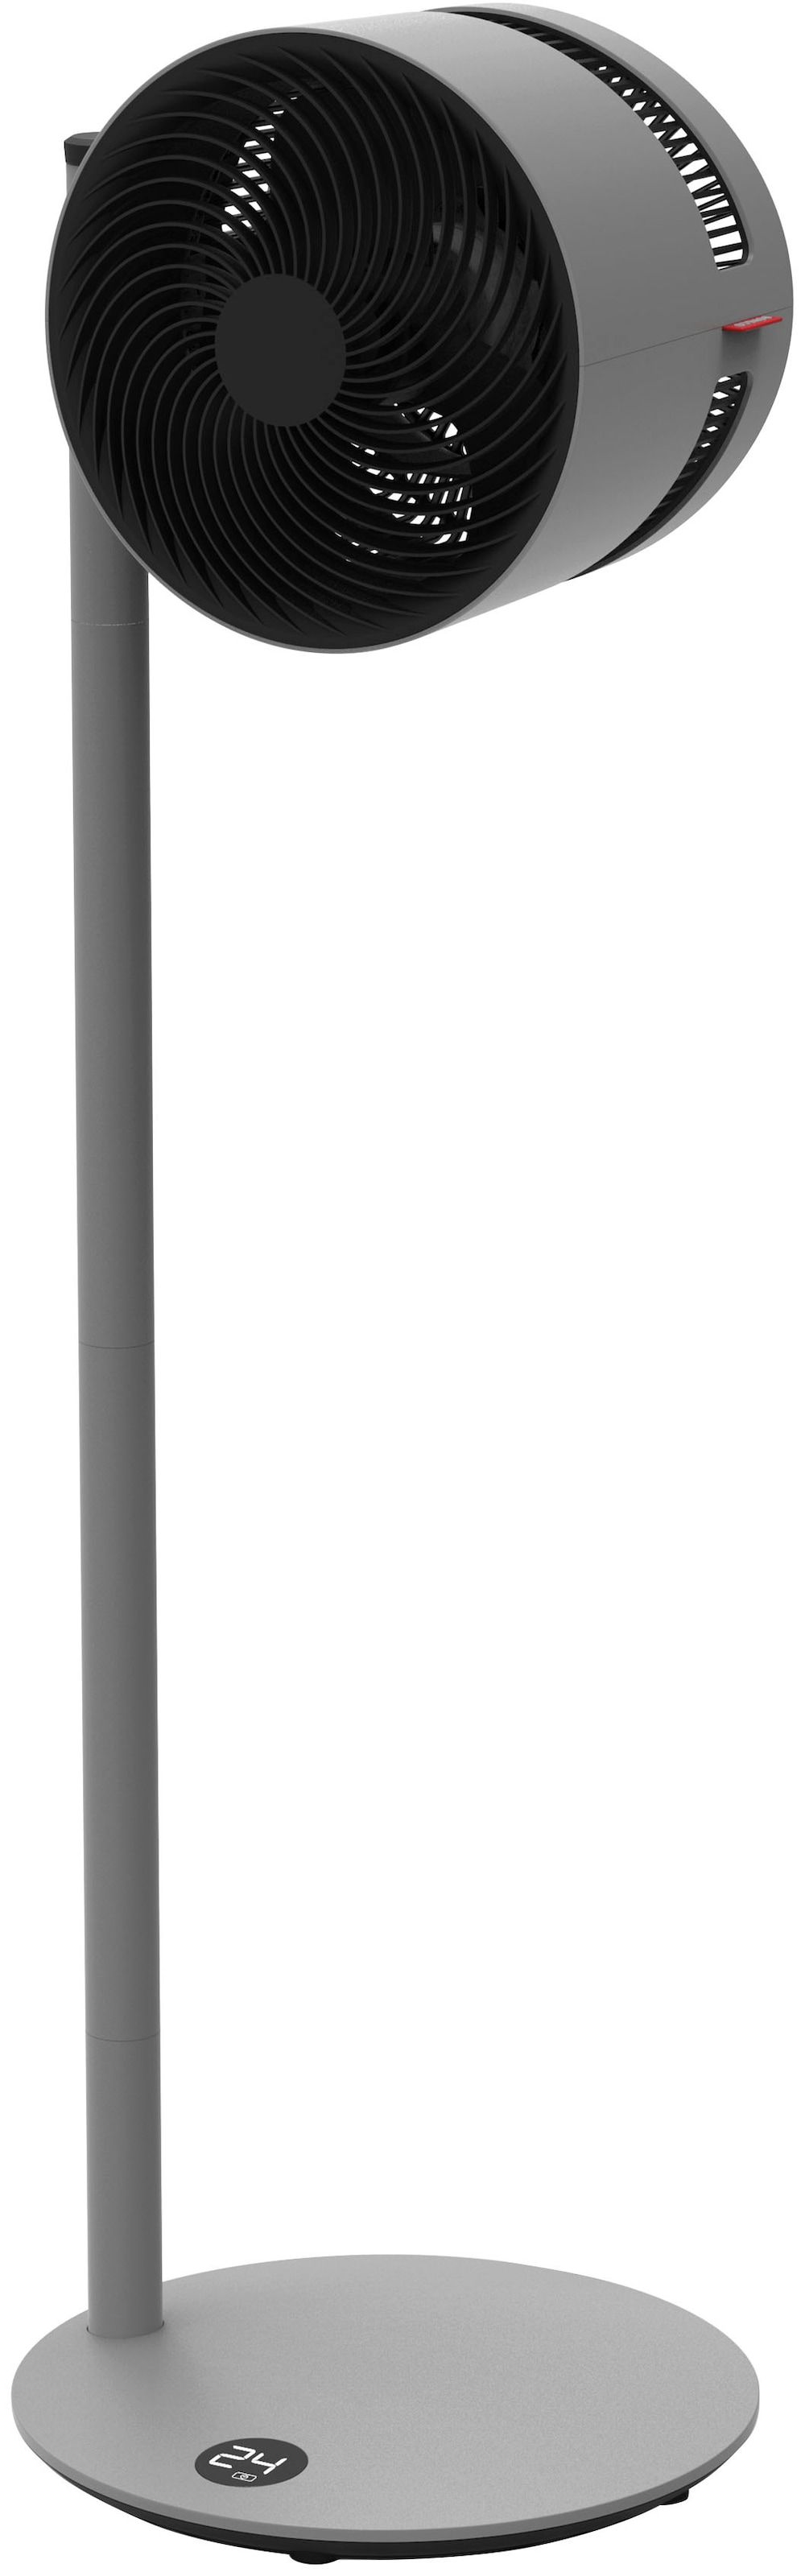 Standventilator »Air Shower F235«, 37,5 cm Durchmesser, 22 W